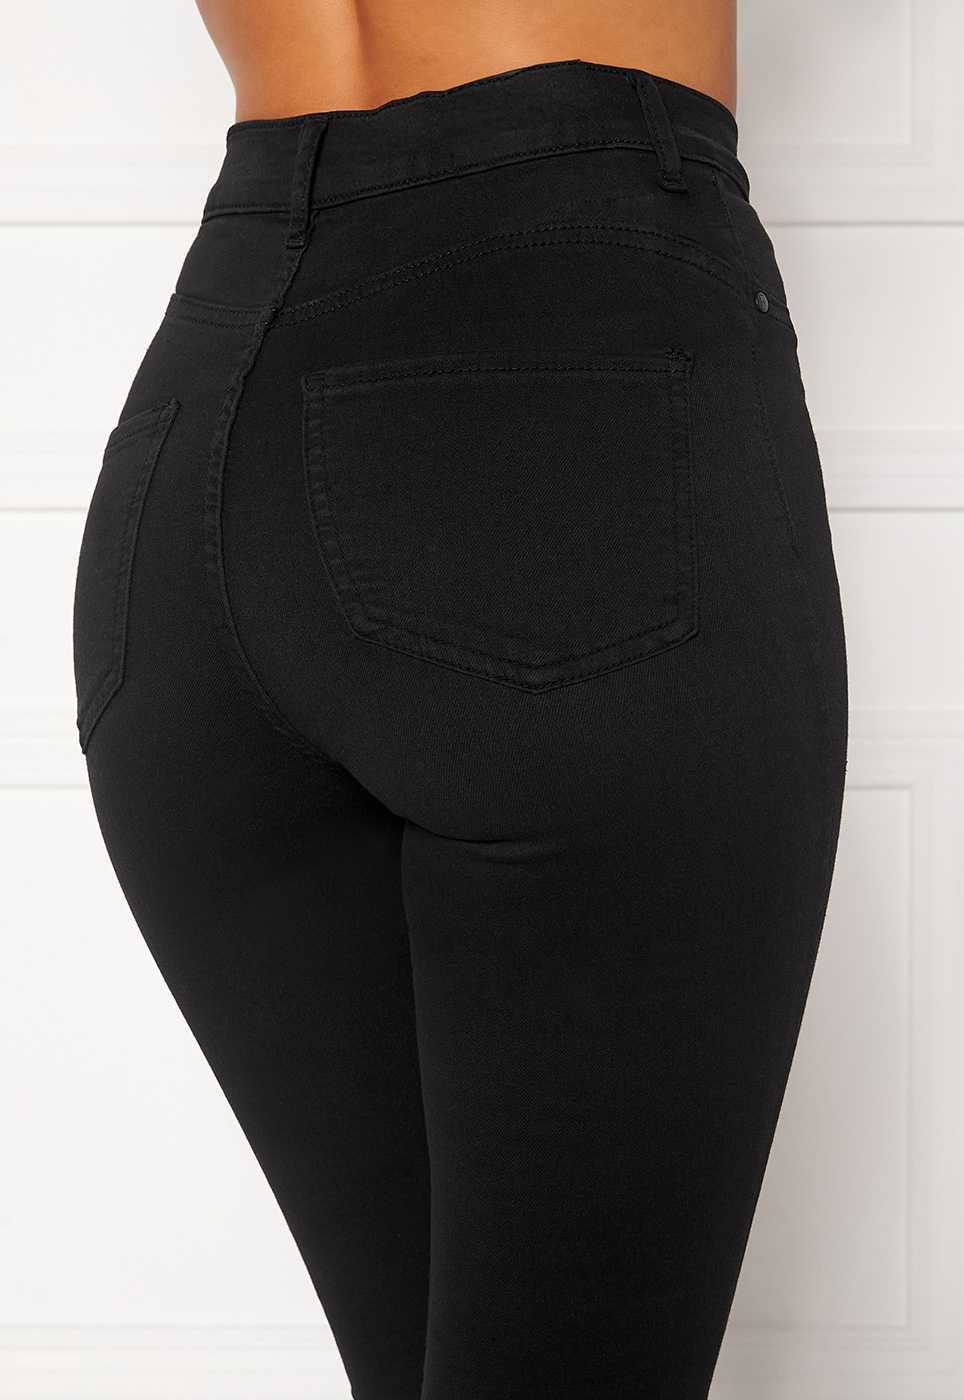 Spodnie czarne wyszczuplające klasyczne push up wysoki stan jeans